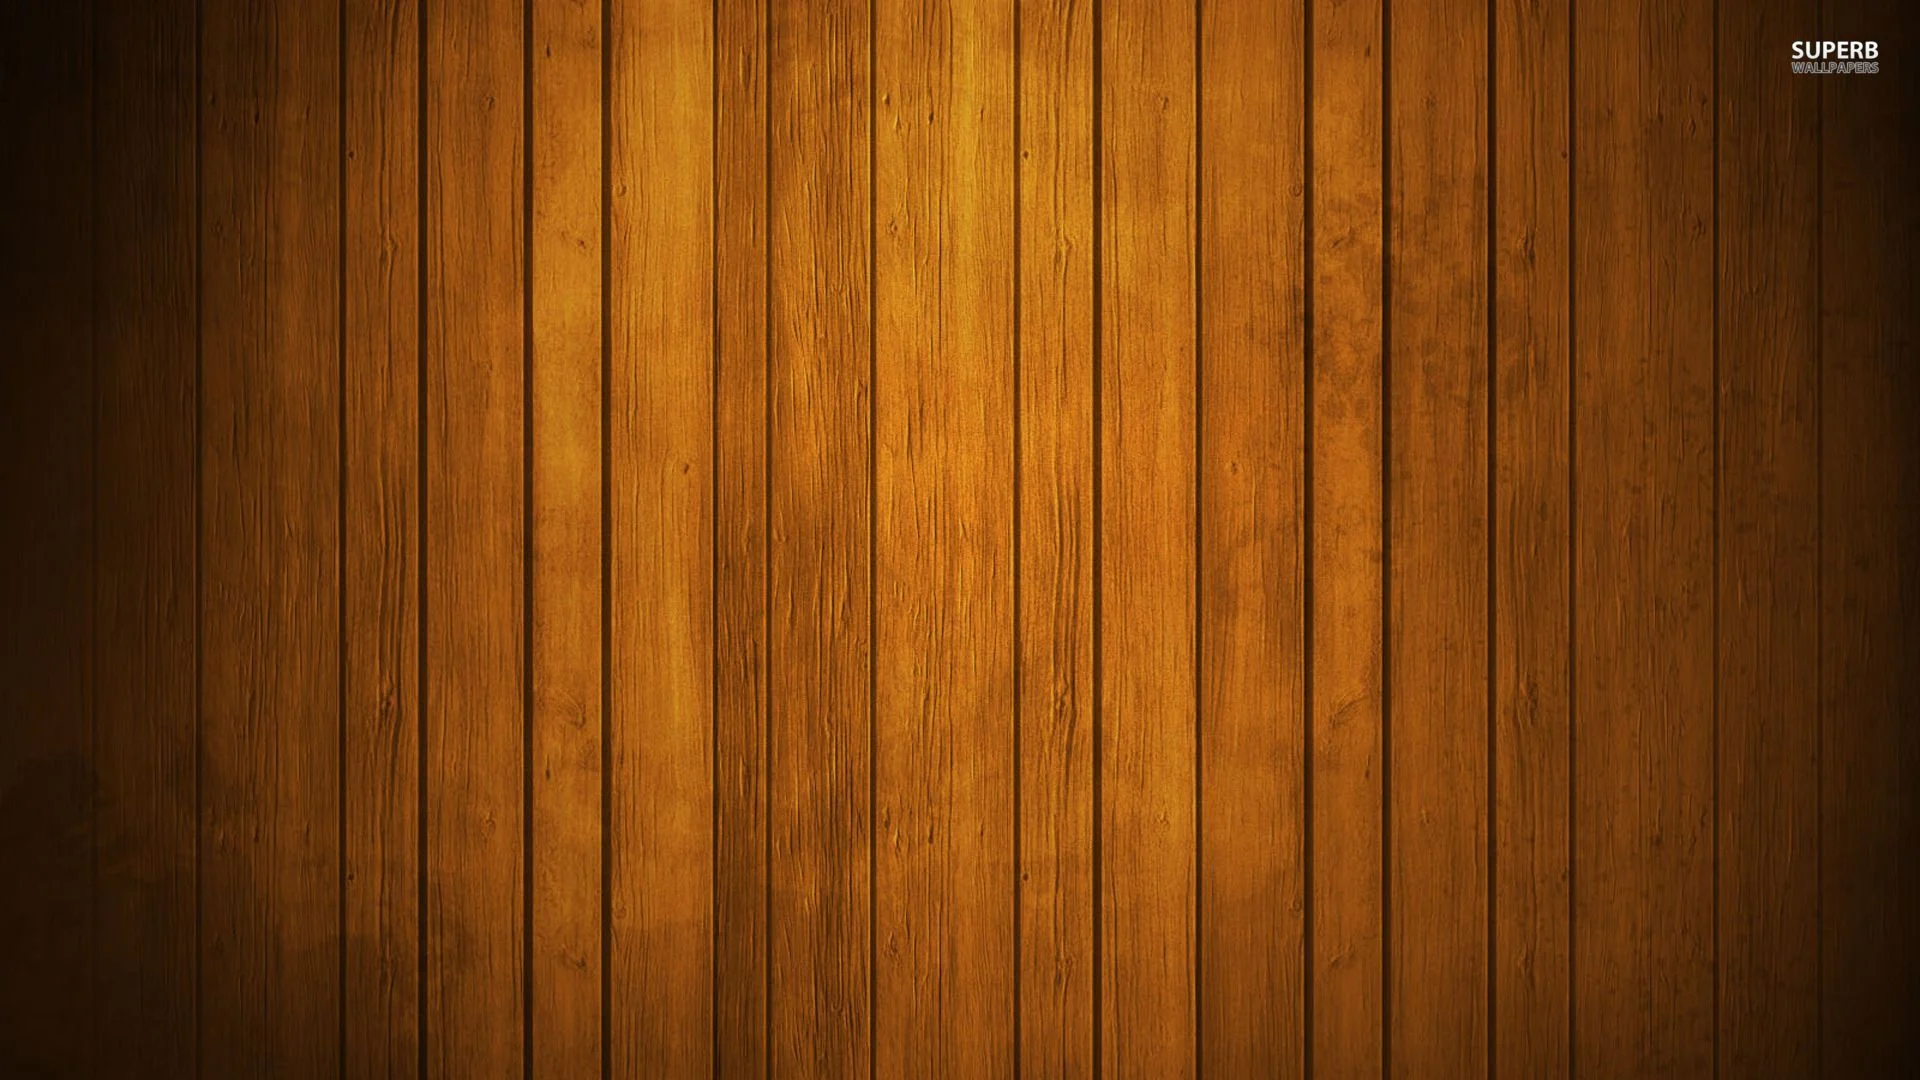 1920x1080 Wood Desktop Wallpapers Top Free Wood Desktop Backgrounds